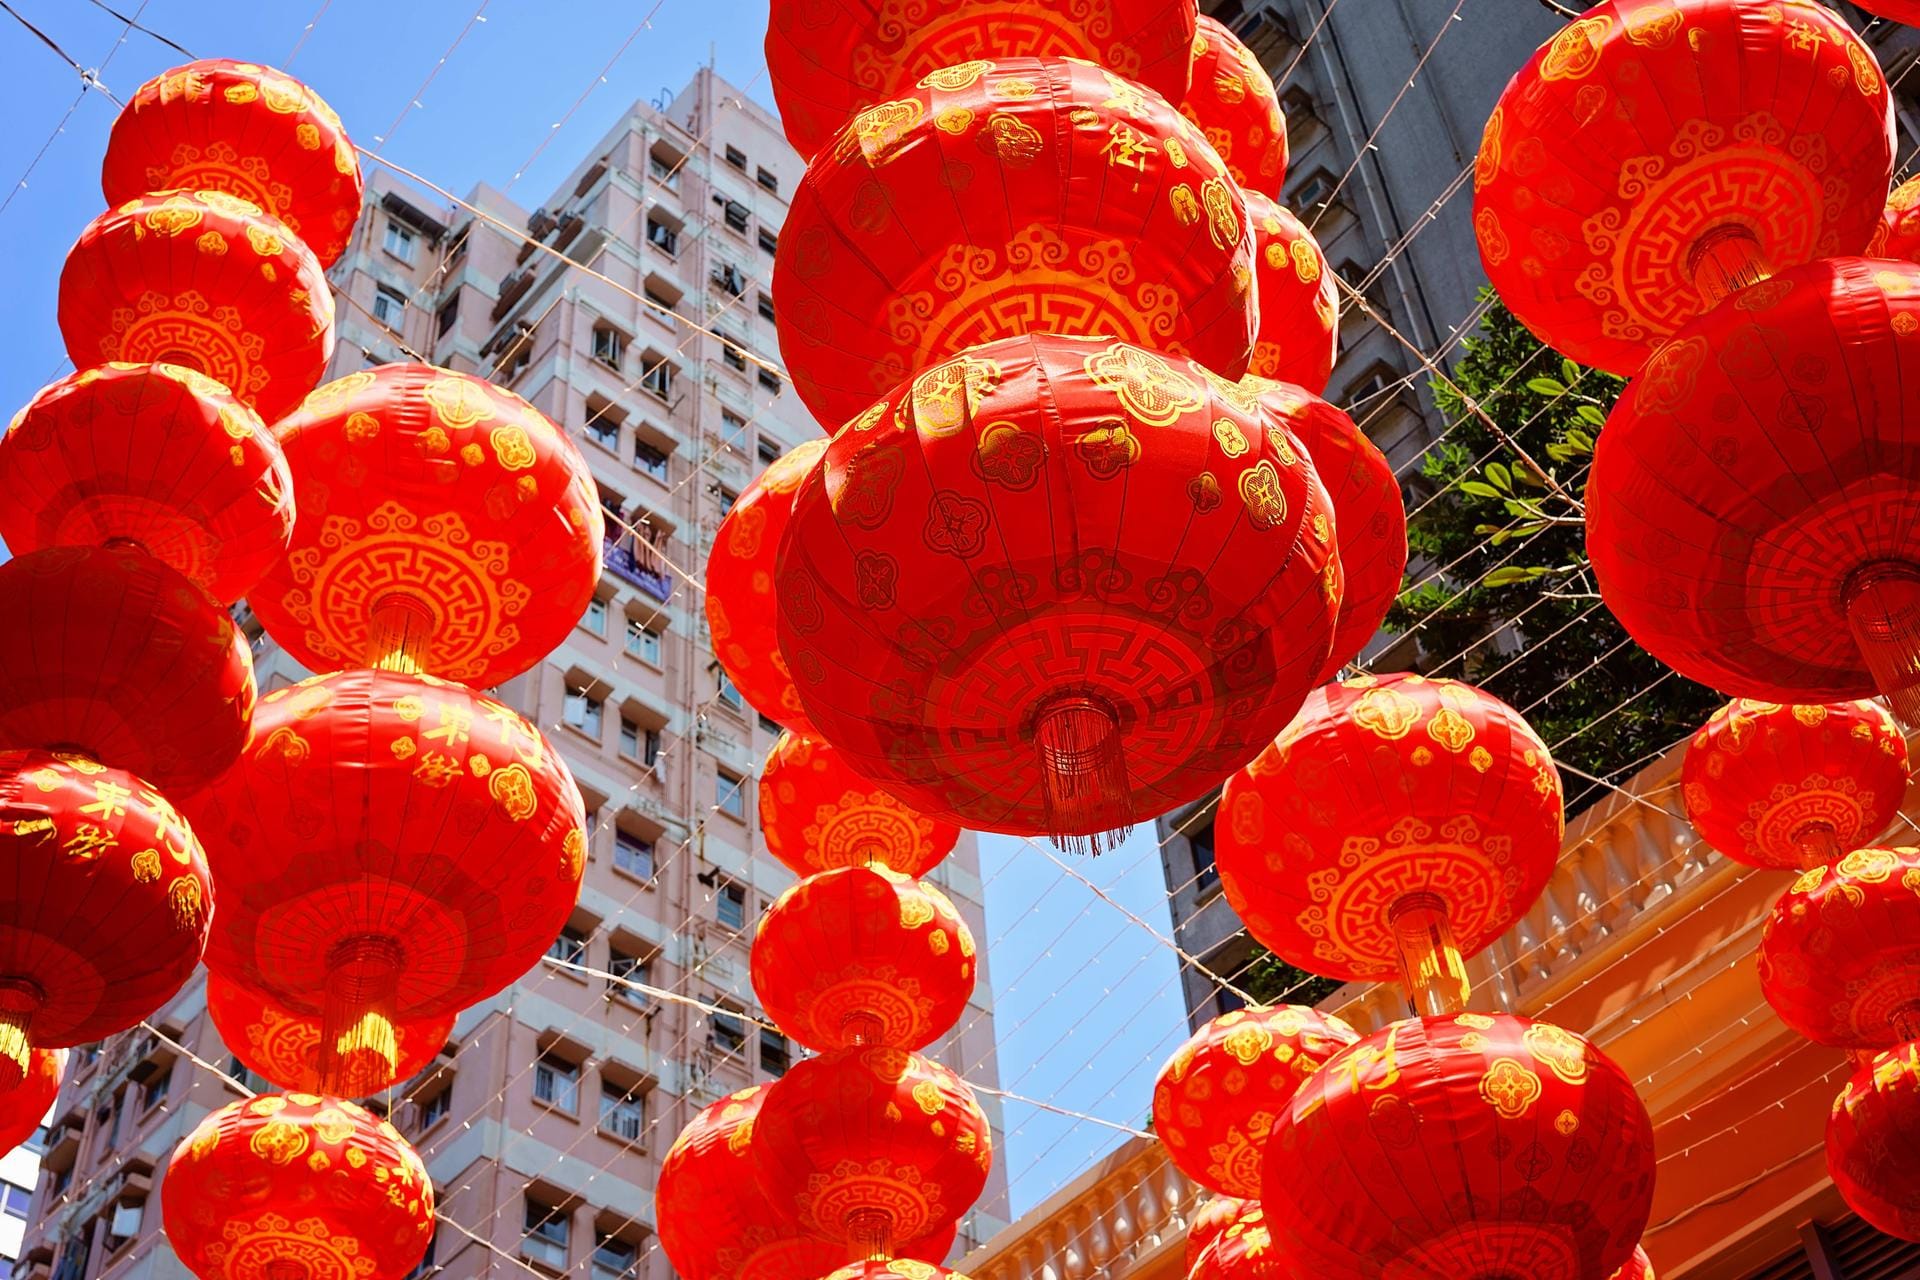 Rote Lampions sind typisch für das Chinesische Neujahrsfest. Sie schmücken Straßen und Häuser und sollen böse Monster vertreiben.